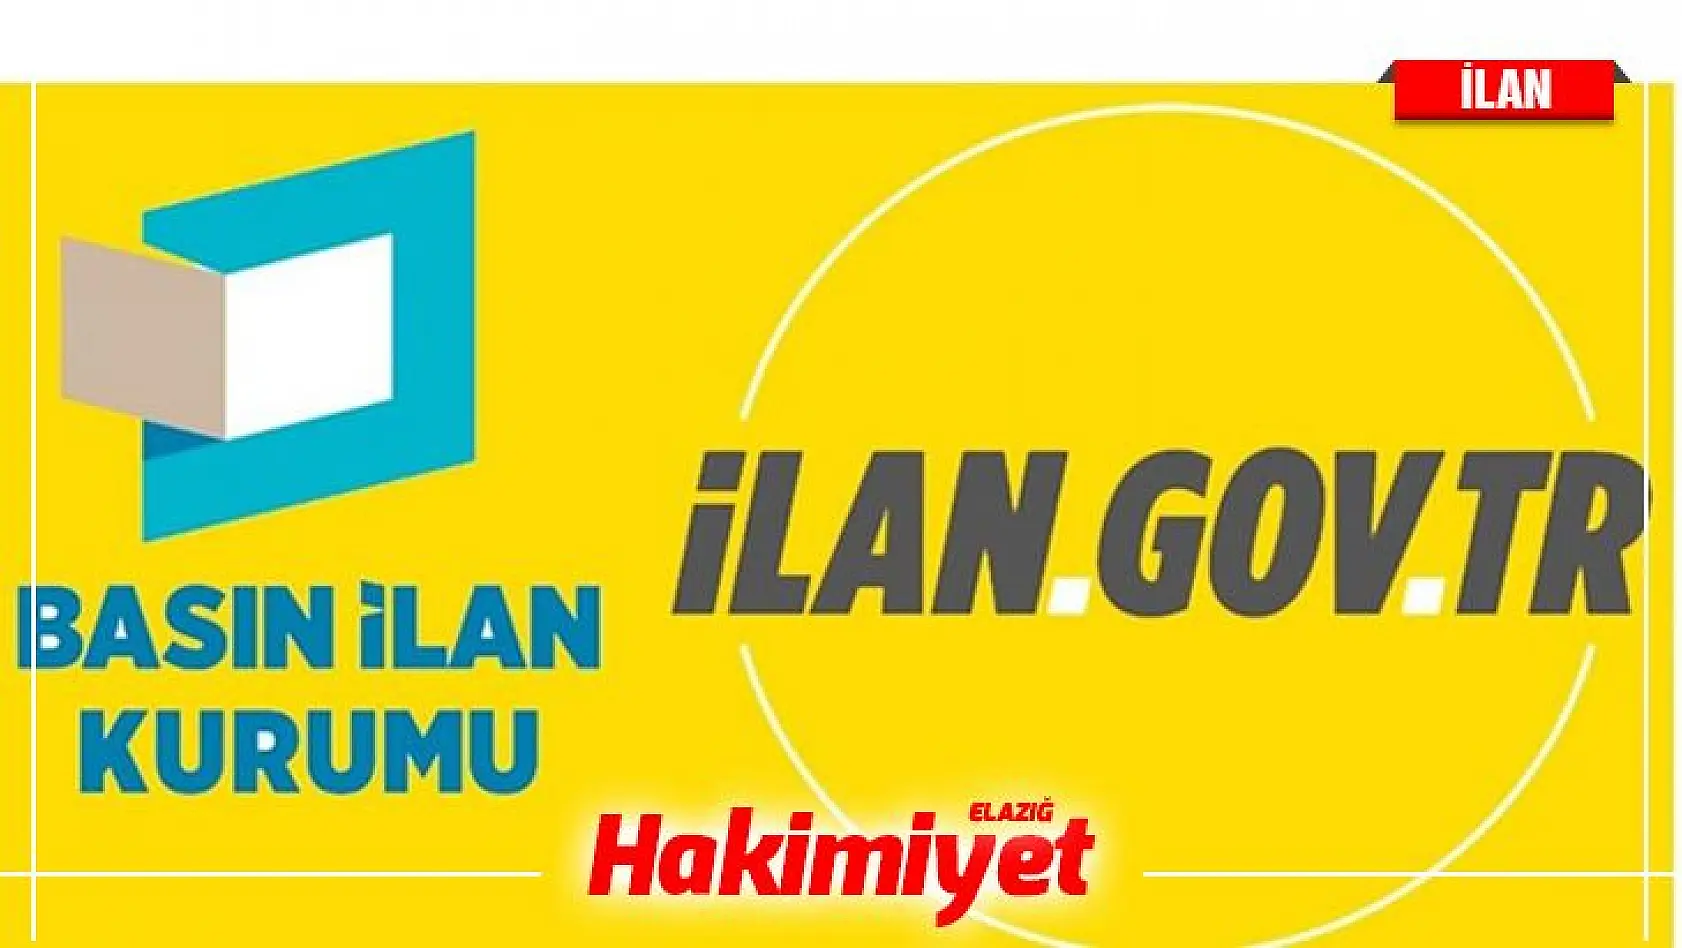 İstanbul Rumeli Üniversitesi 7 öğretim üyesi alacak